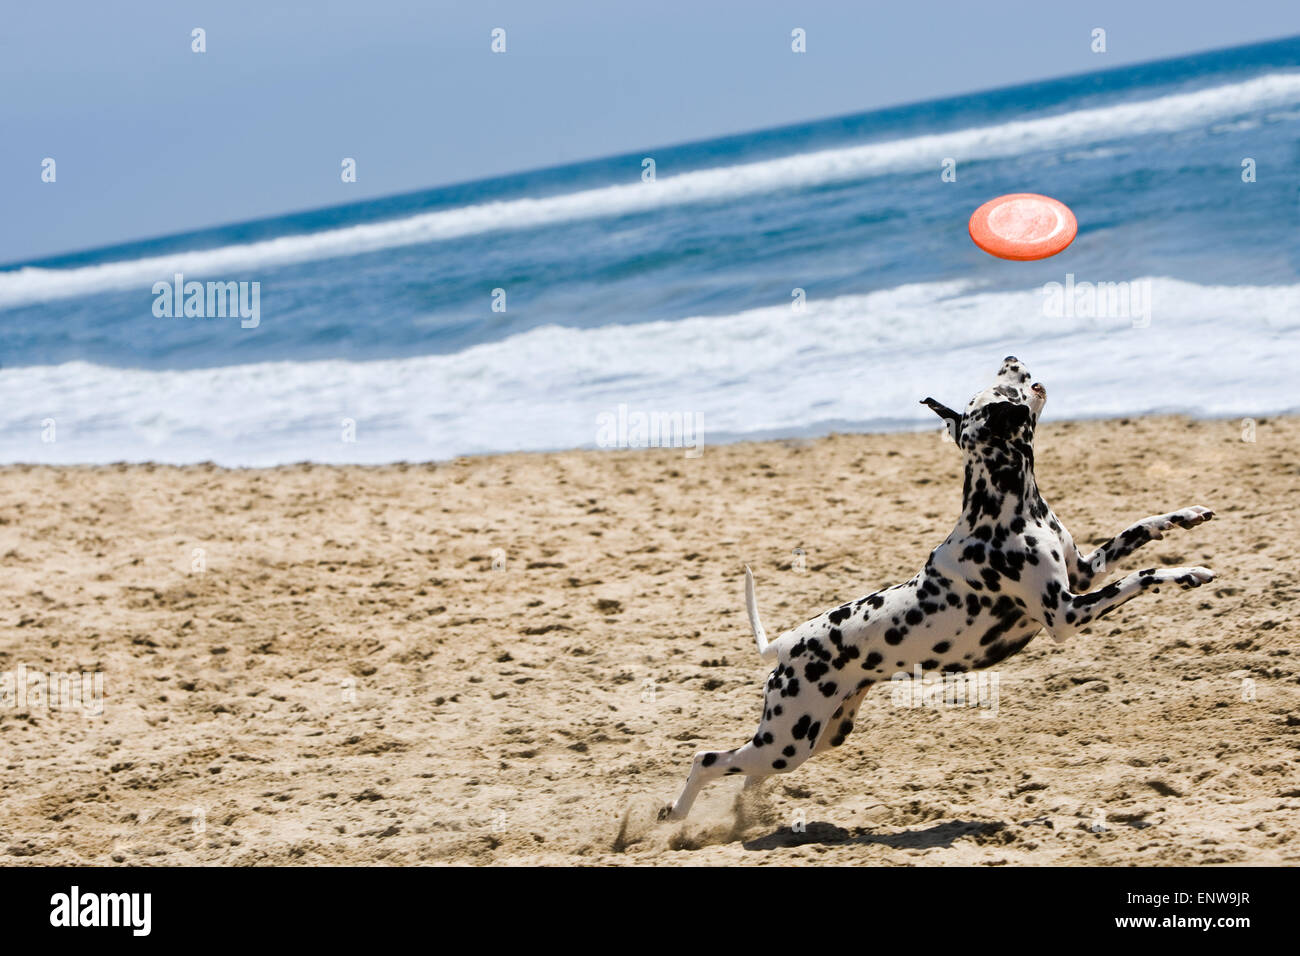 Cane dalmata correre e saltare per frisbee in spiaggia in sabbia con oceano e cielo blu in background in una giornata di sole Foto Stock